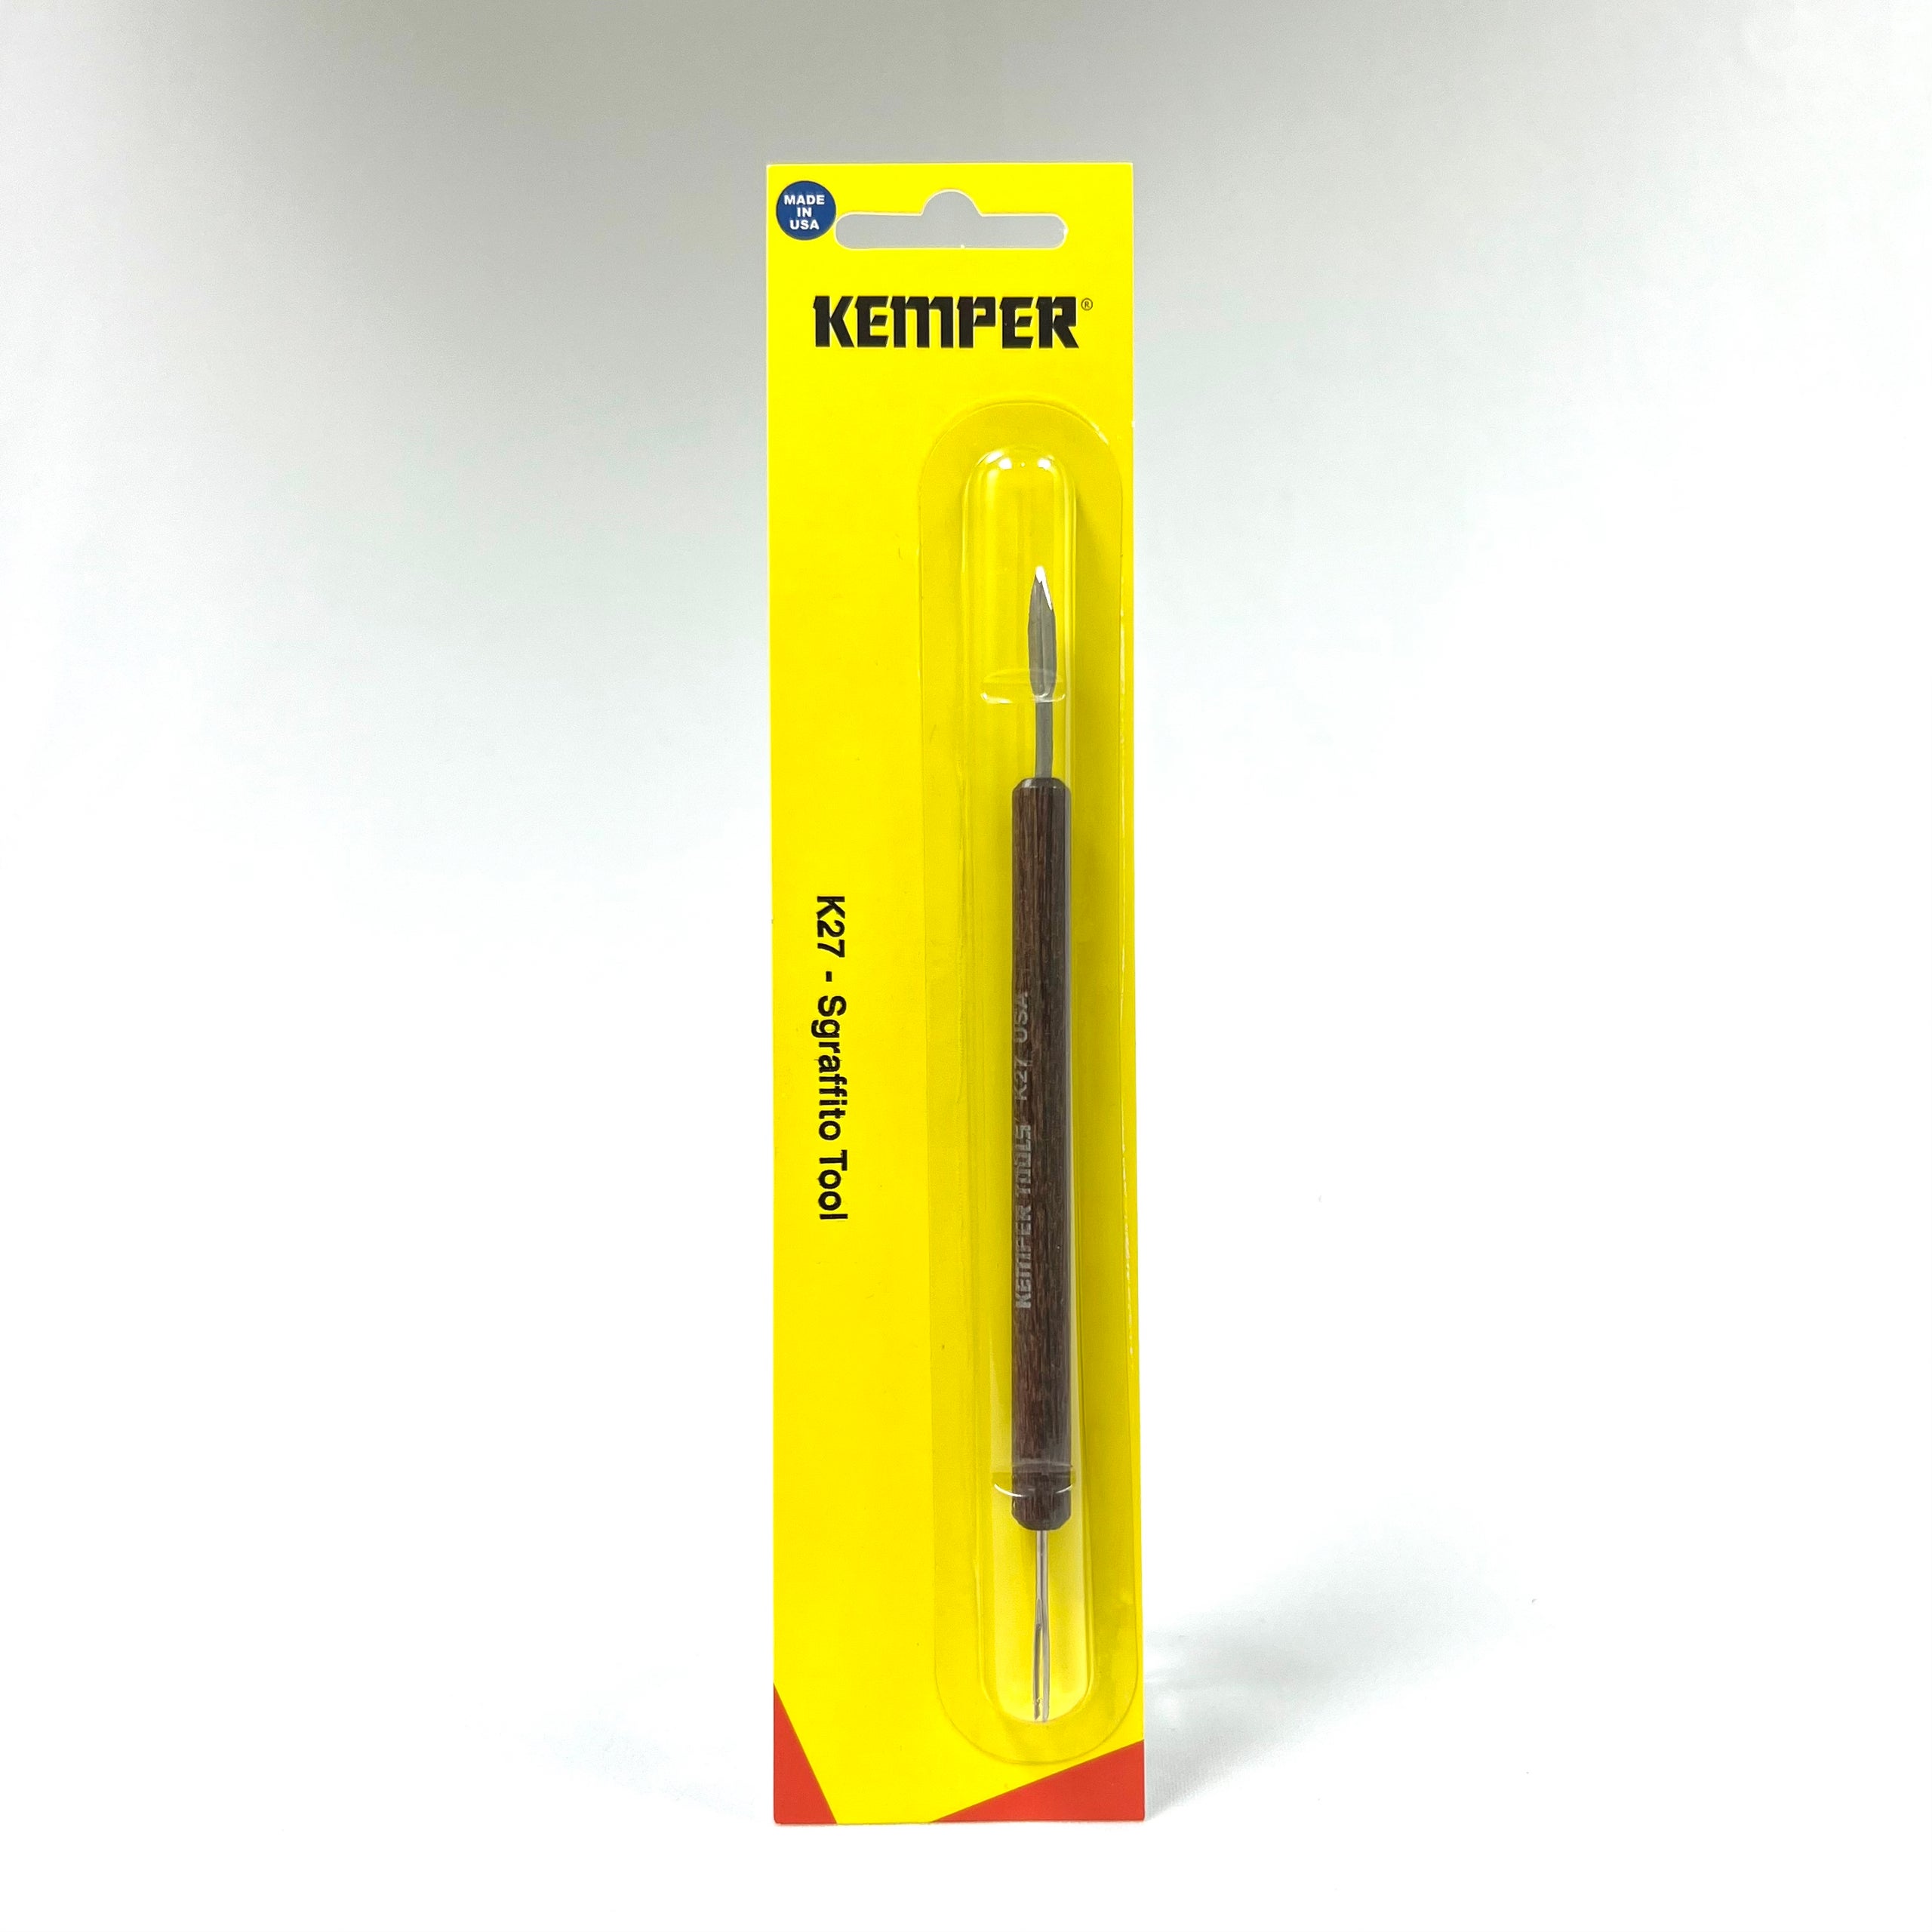 K27 Sgraffito Tool 6 By Kemper Tools